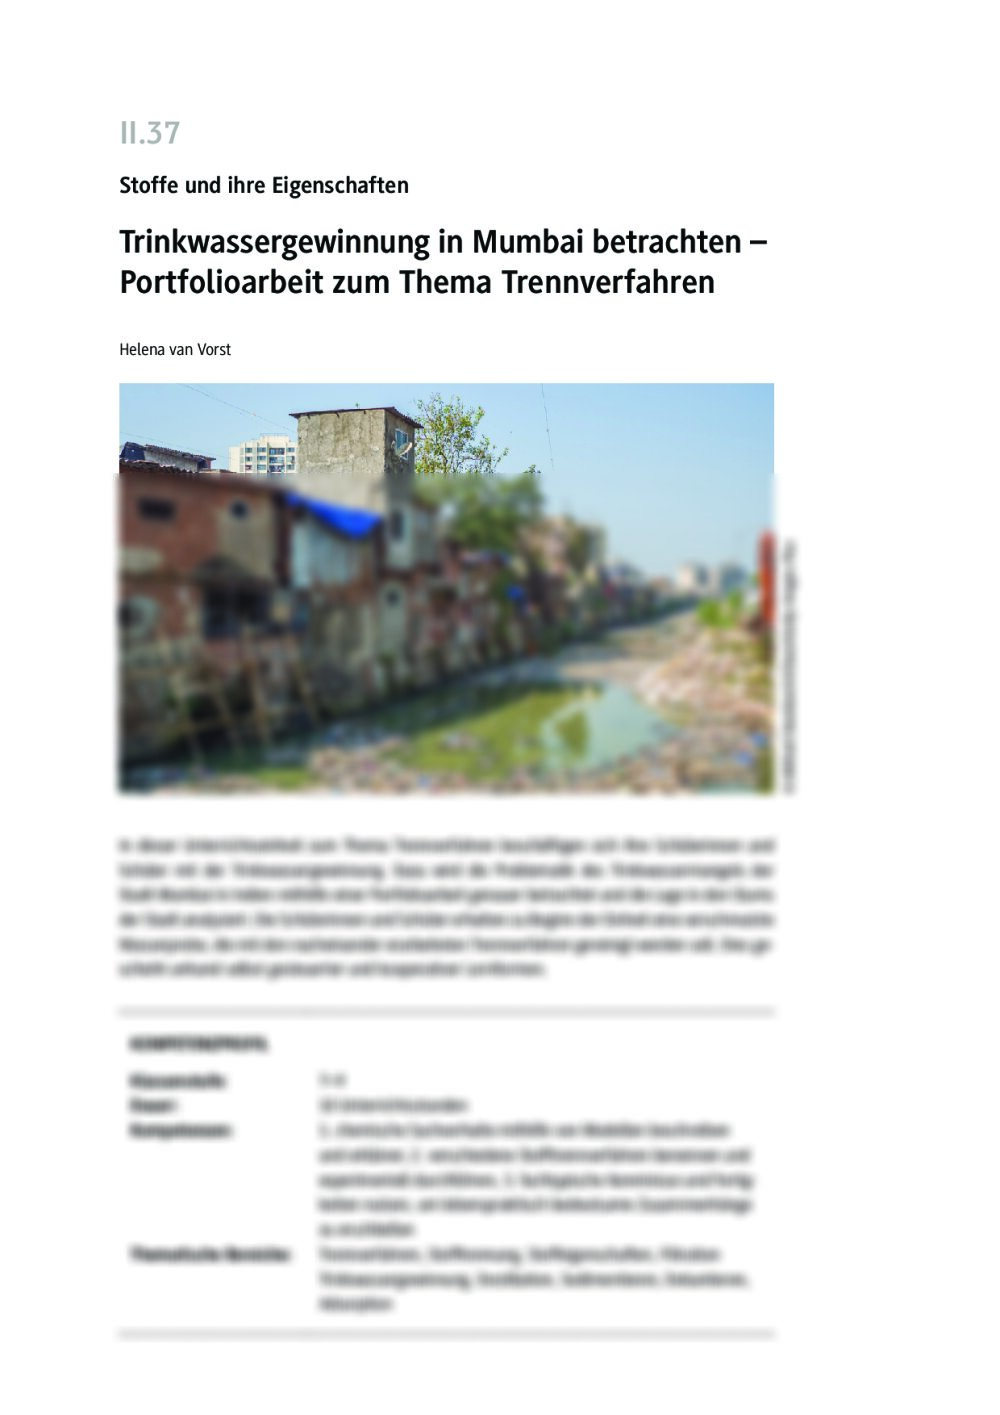 Trinkwassergewinnung in Mumbai betrachten - Seite 1